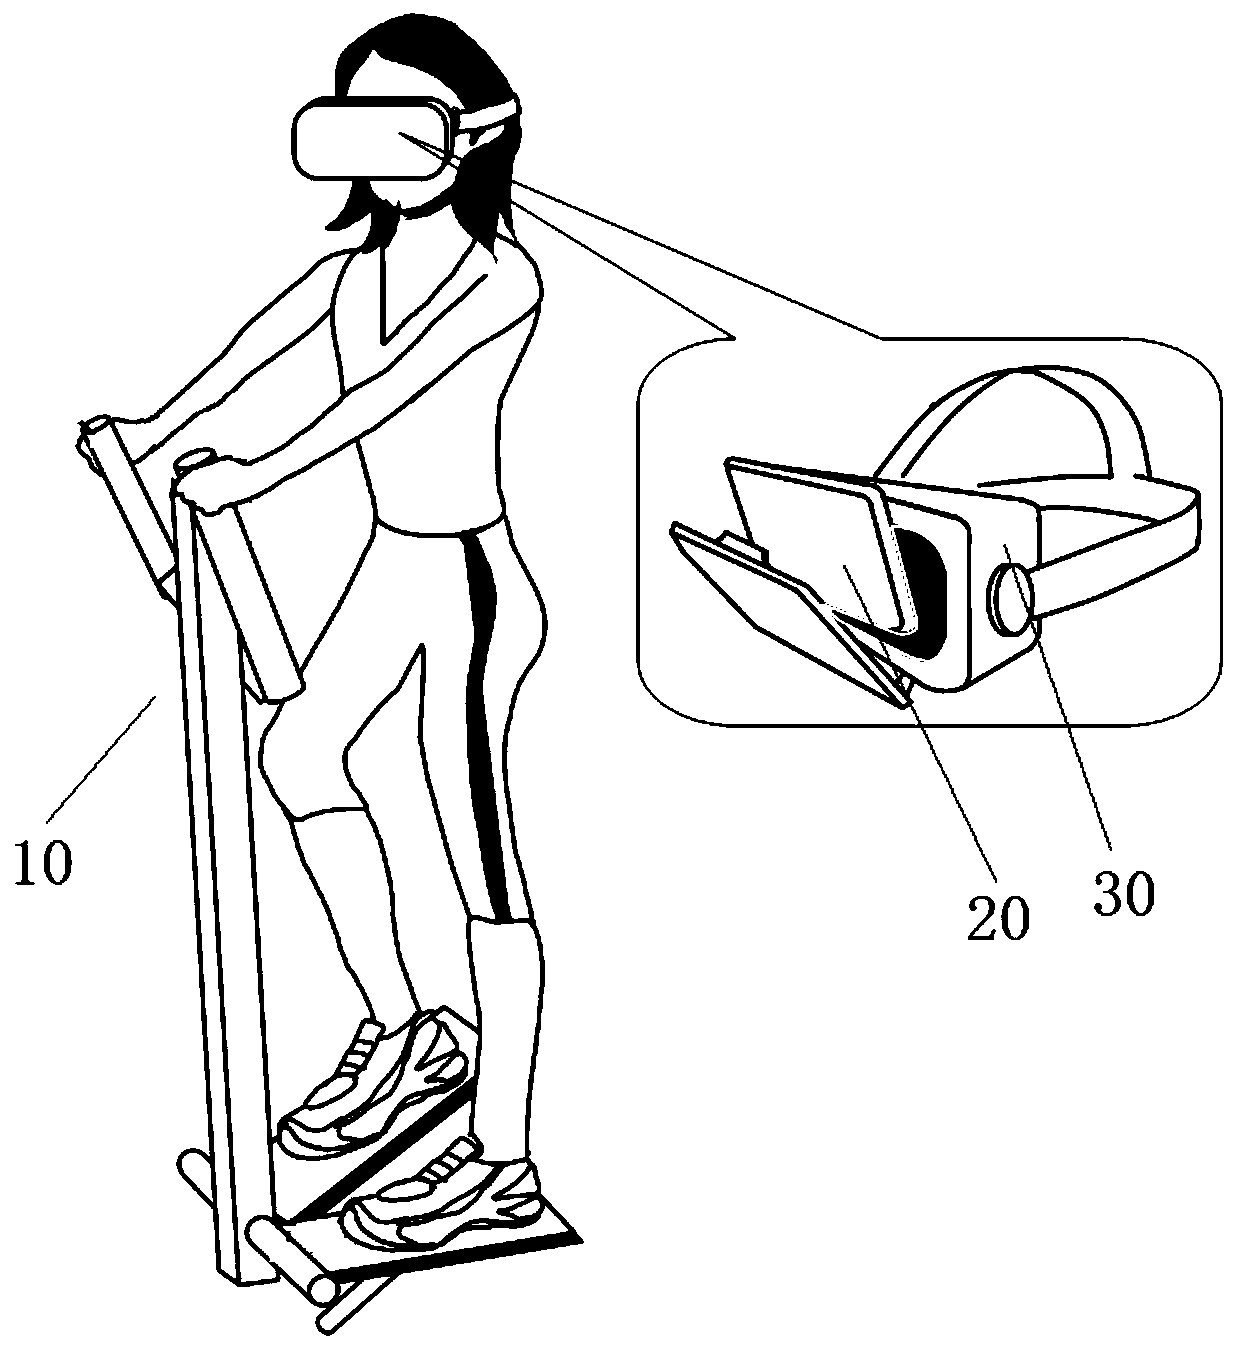 Treadmill motion platform based on VR